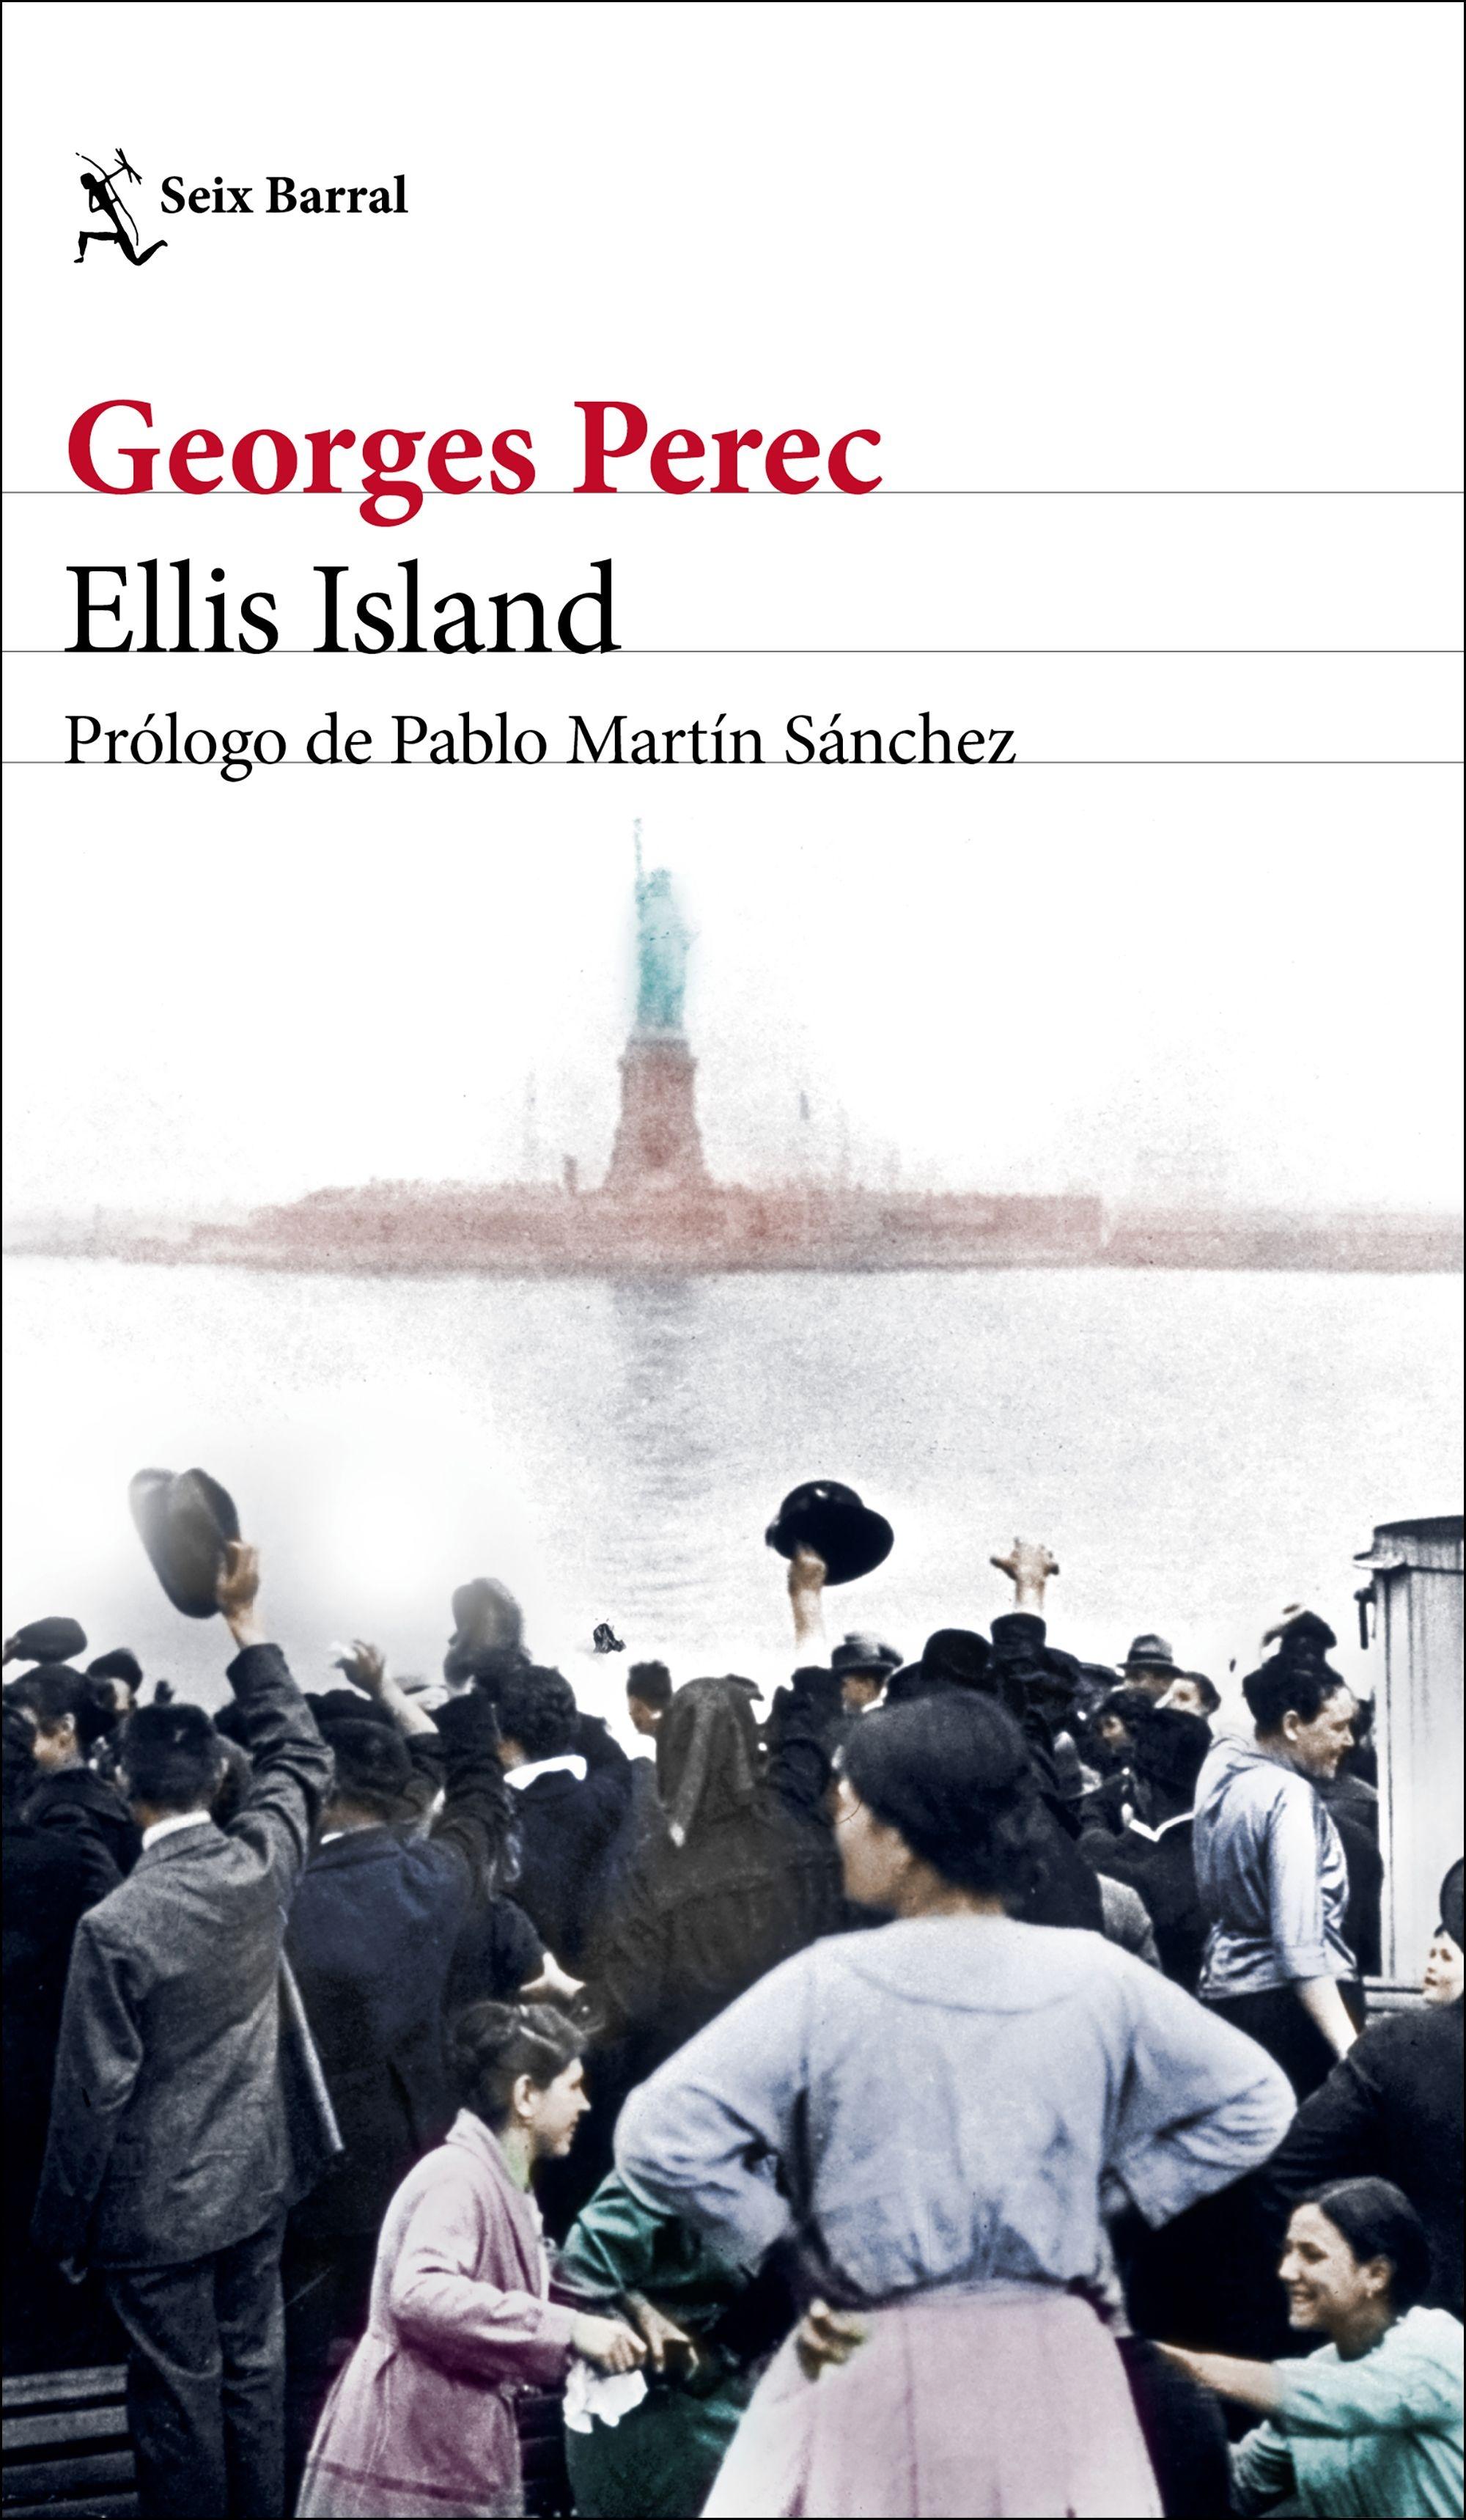 Ellis Island "Prólogo de Pablo Martín Sánchez"